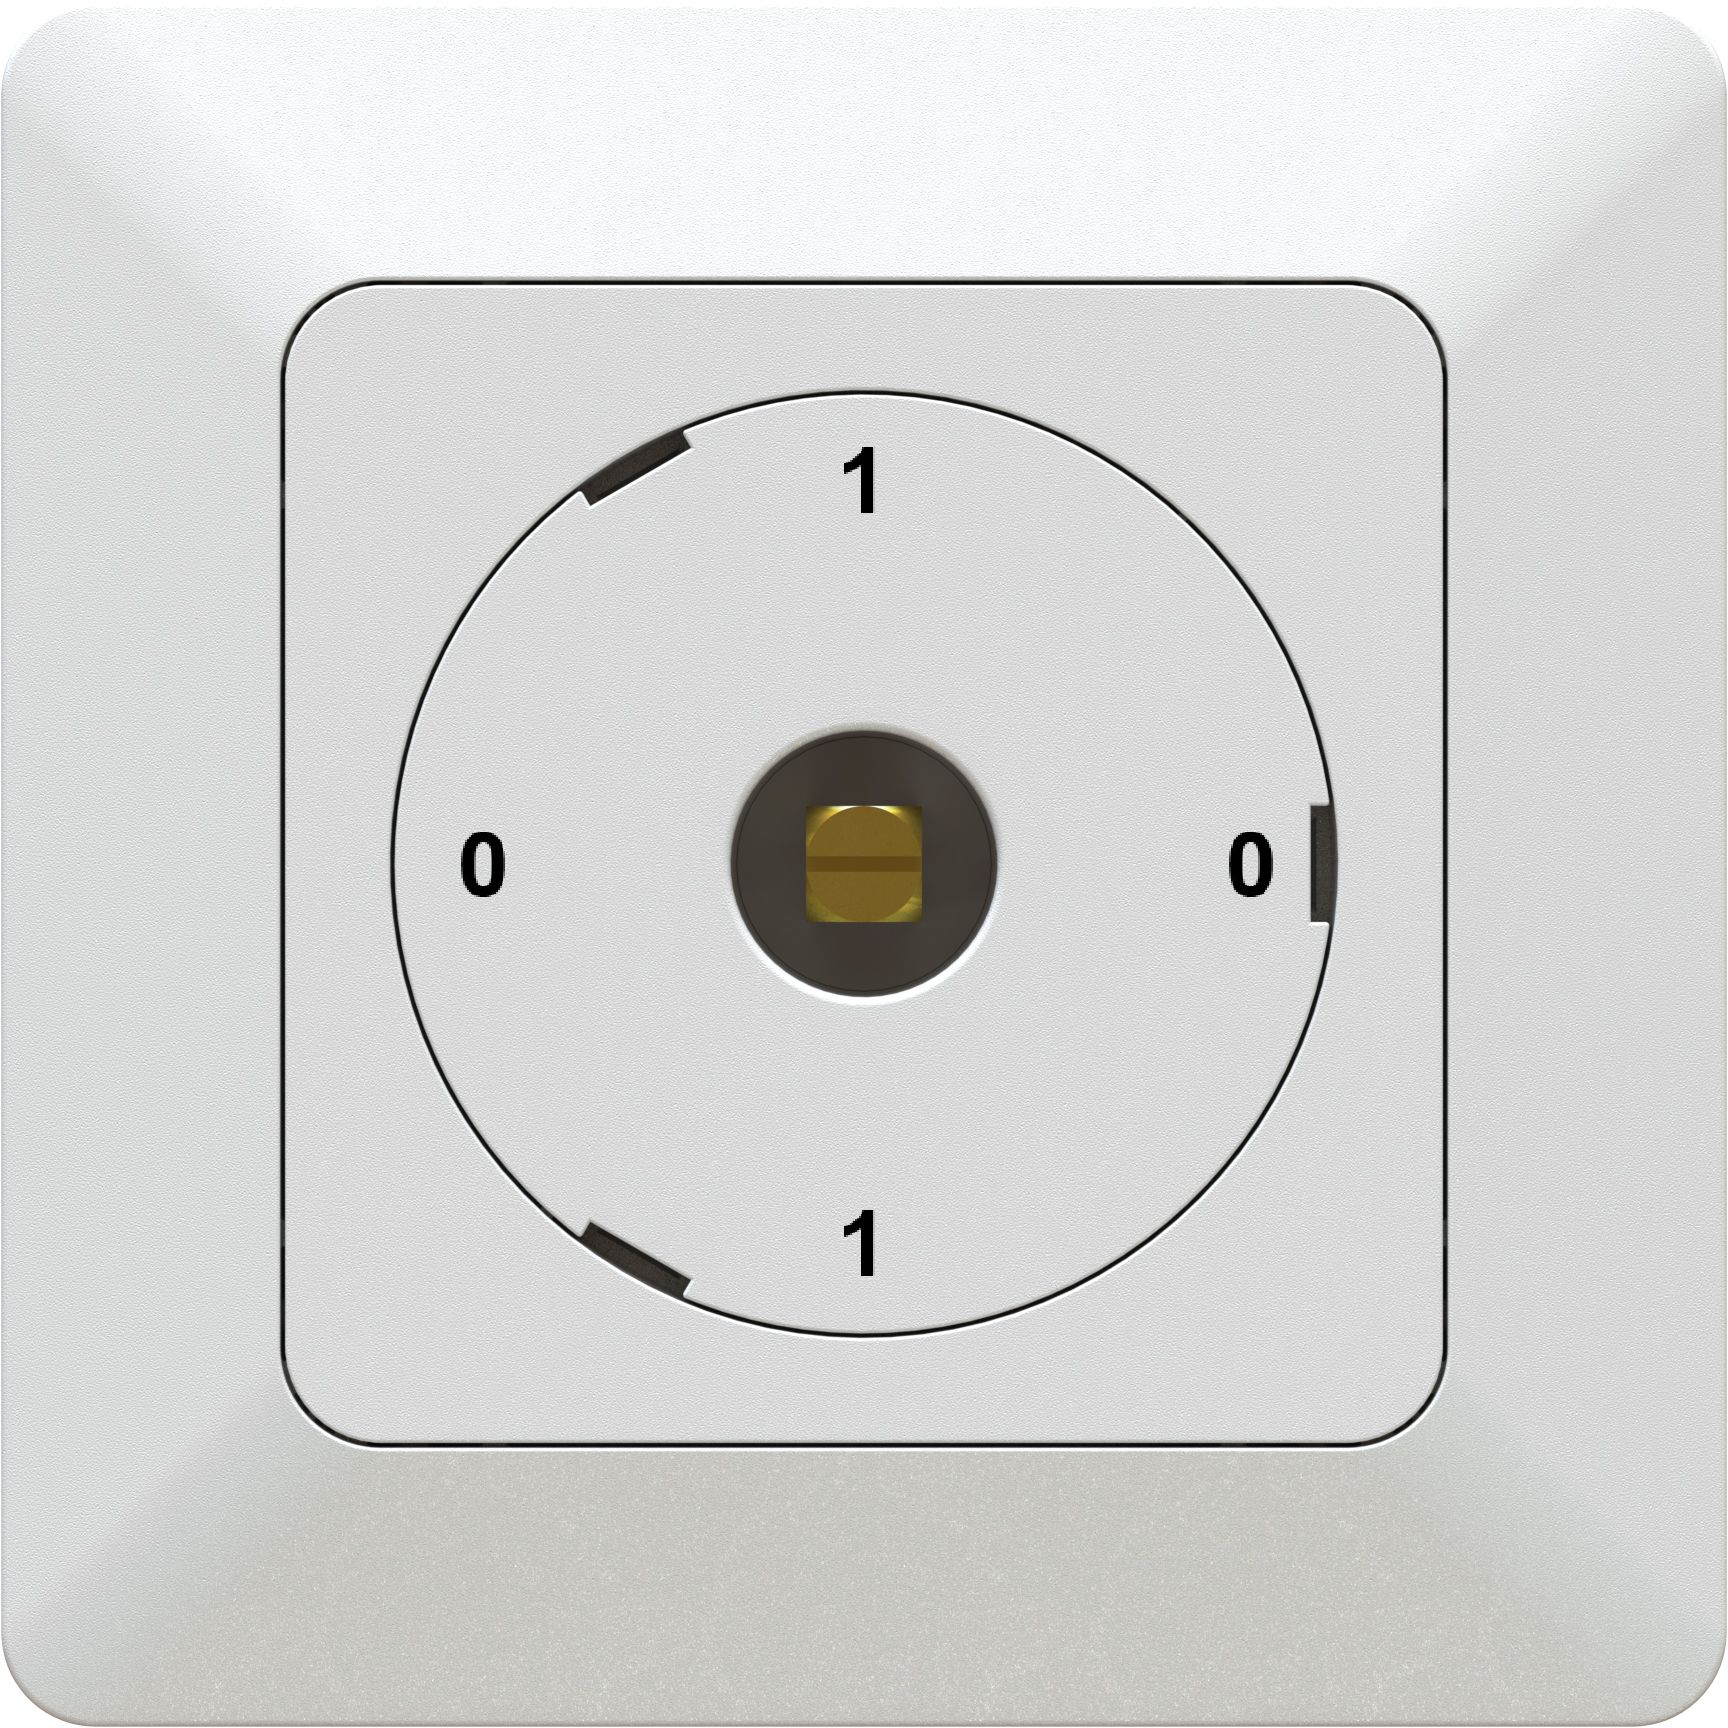 interrupteur à came schéma 0/1L 0-1-0-1 ENC priamos blanc